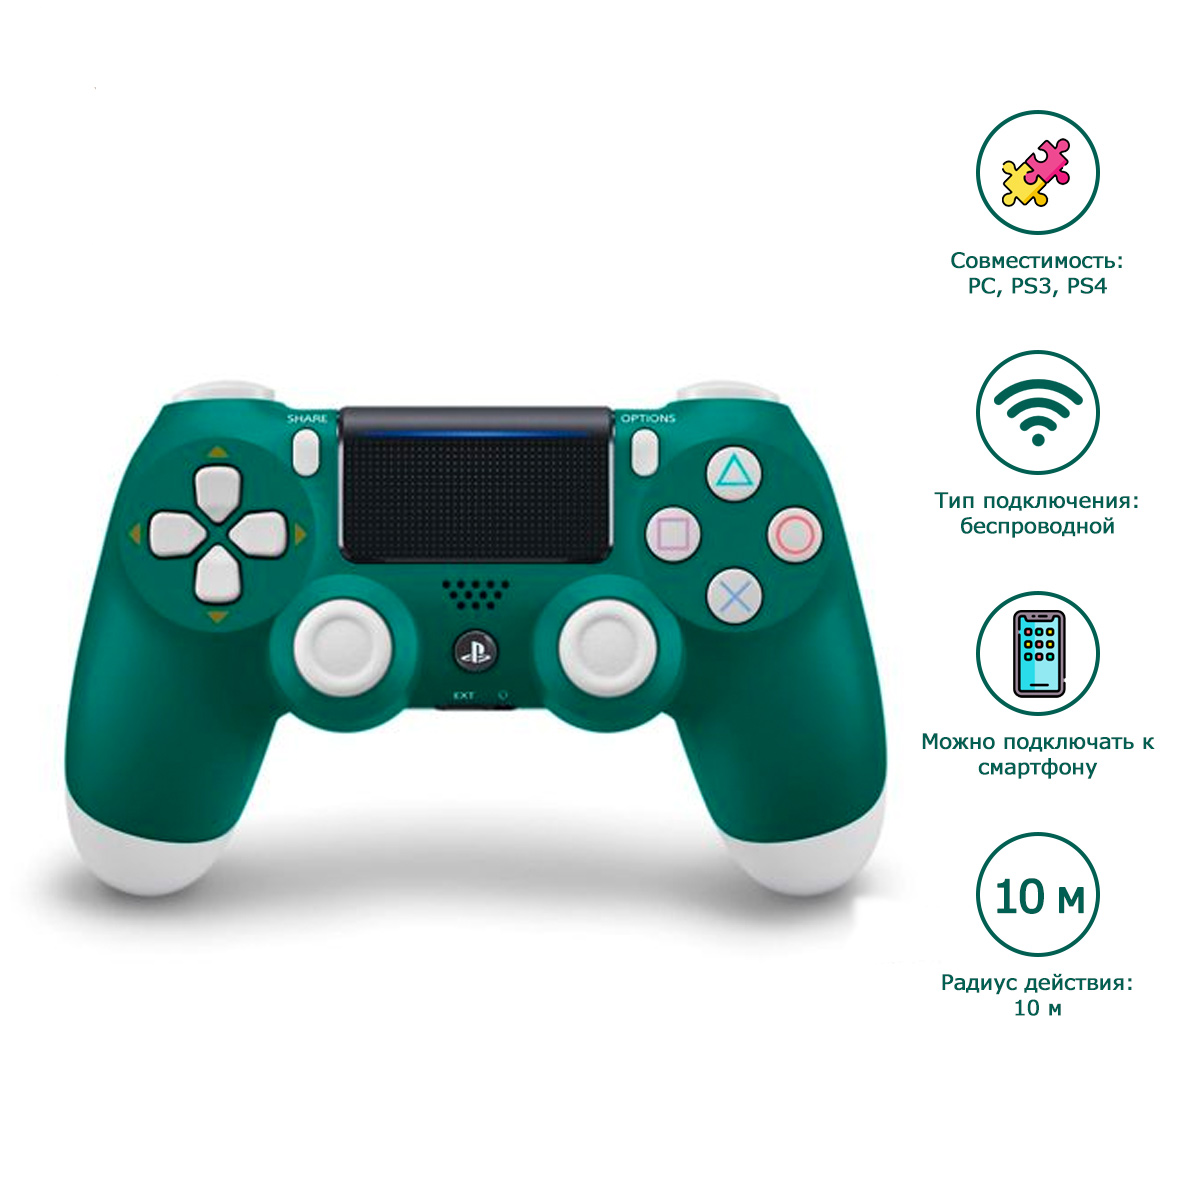 Геймпад для PlayStation 4 беспроводной джойстик DualShock 4 / для PS4 (Бело-зеленый) (OEM)